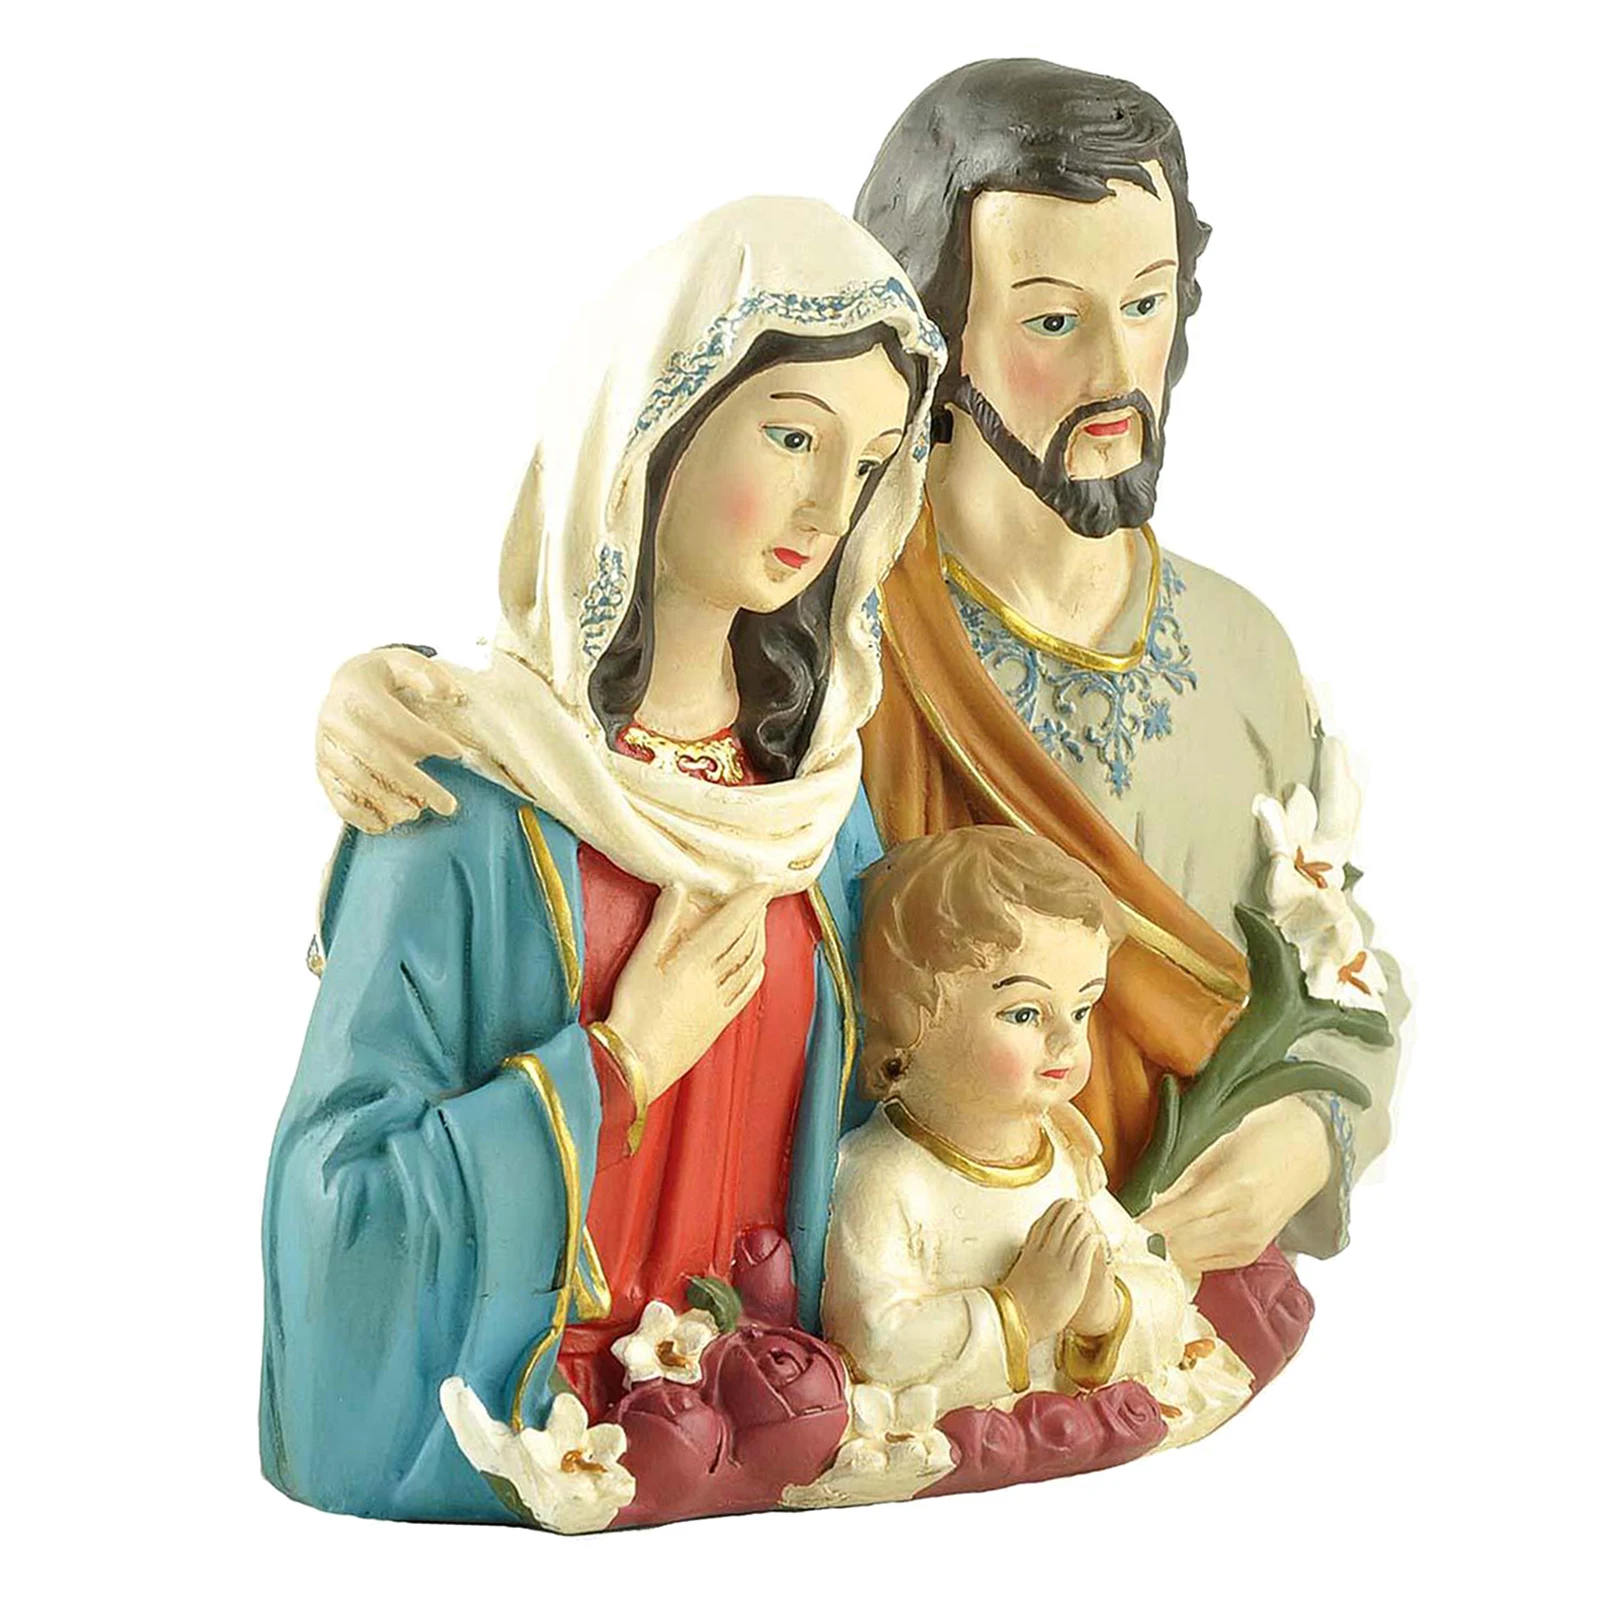 

Статуя Святого семейства католический религиозный Рождественский подарок Мэри Джозеф скульптуры фигурки прикроватные столы Декор